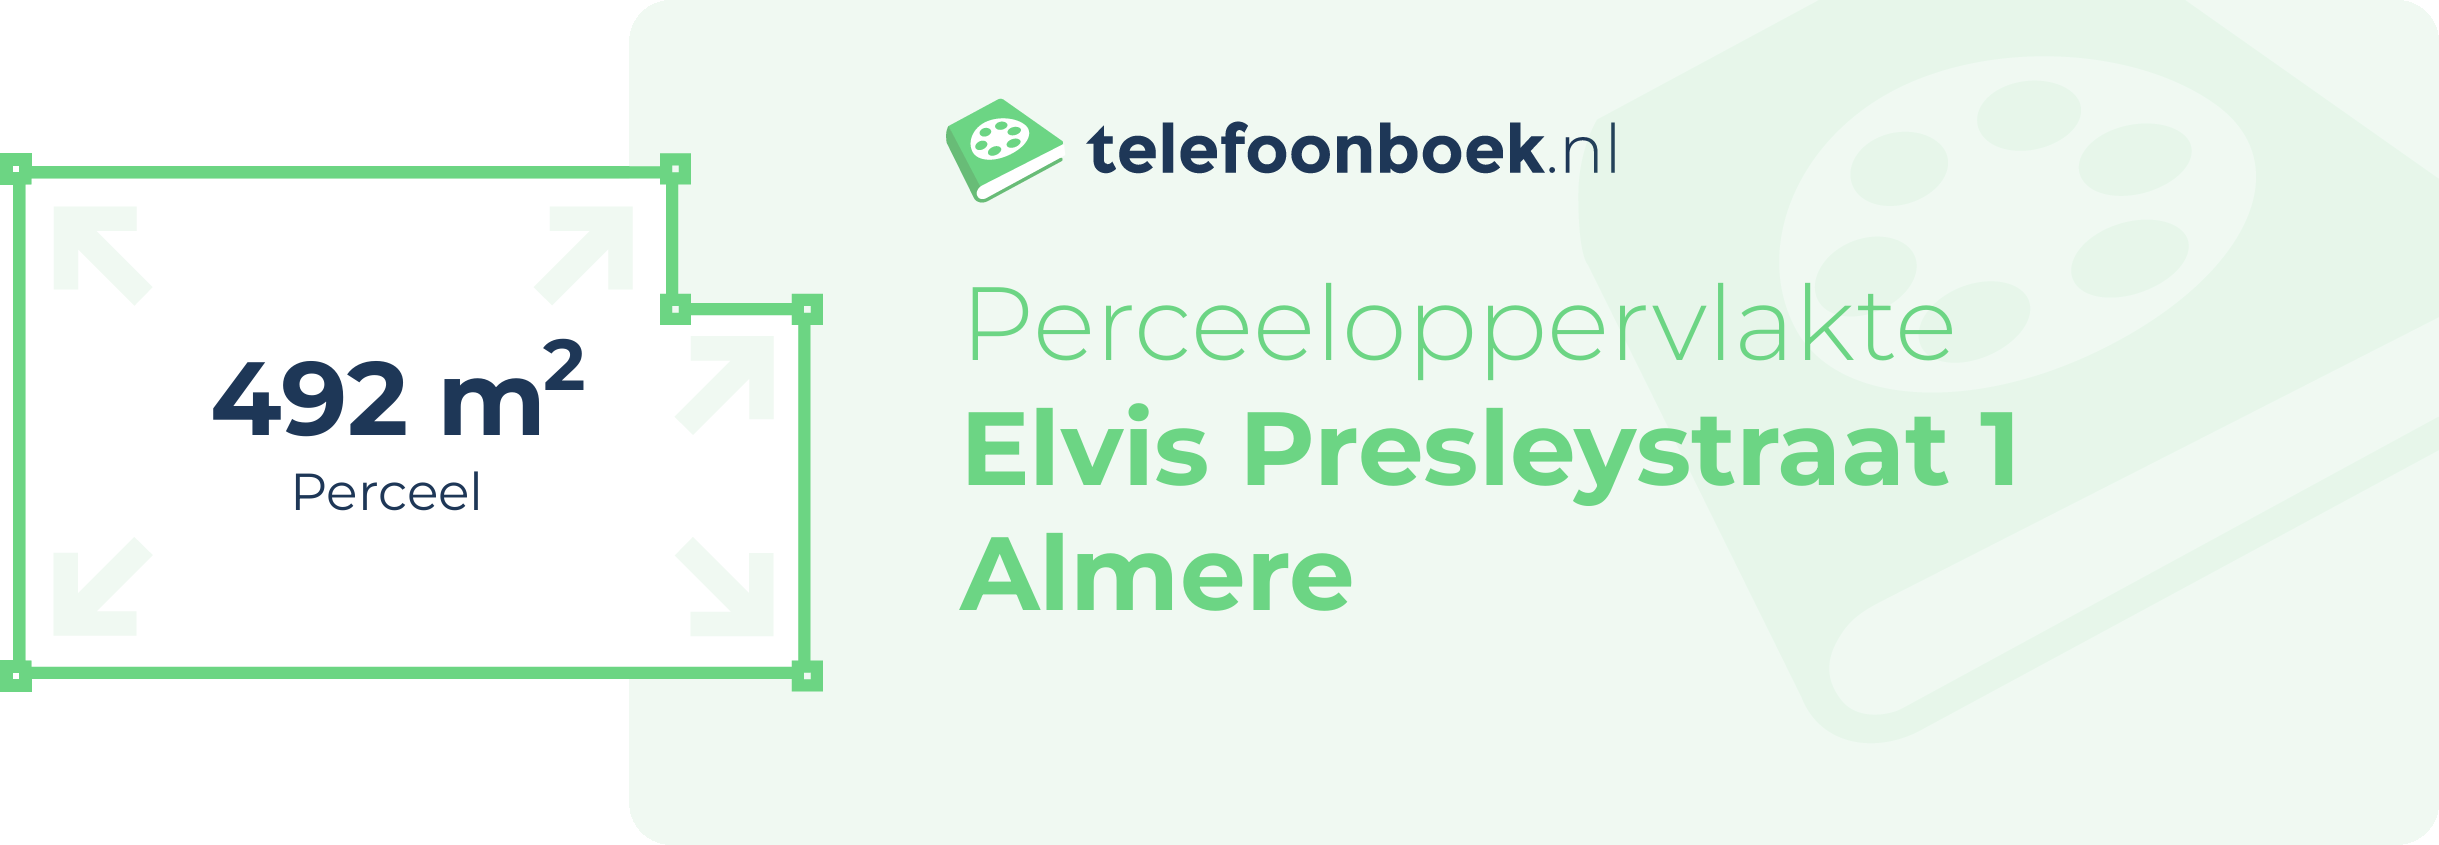 Perceeloppervlakte Elvis Presleystraat 1 Almere